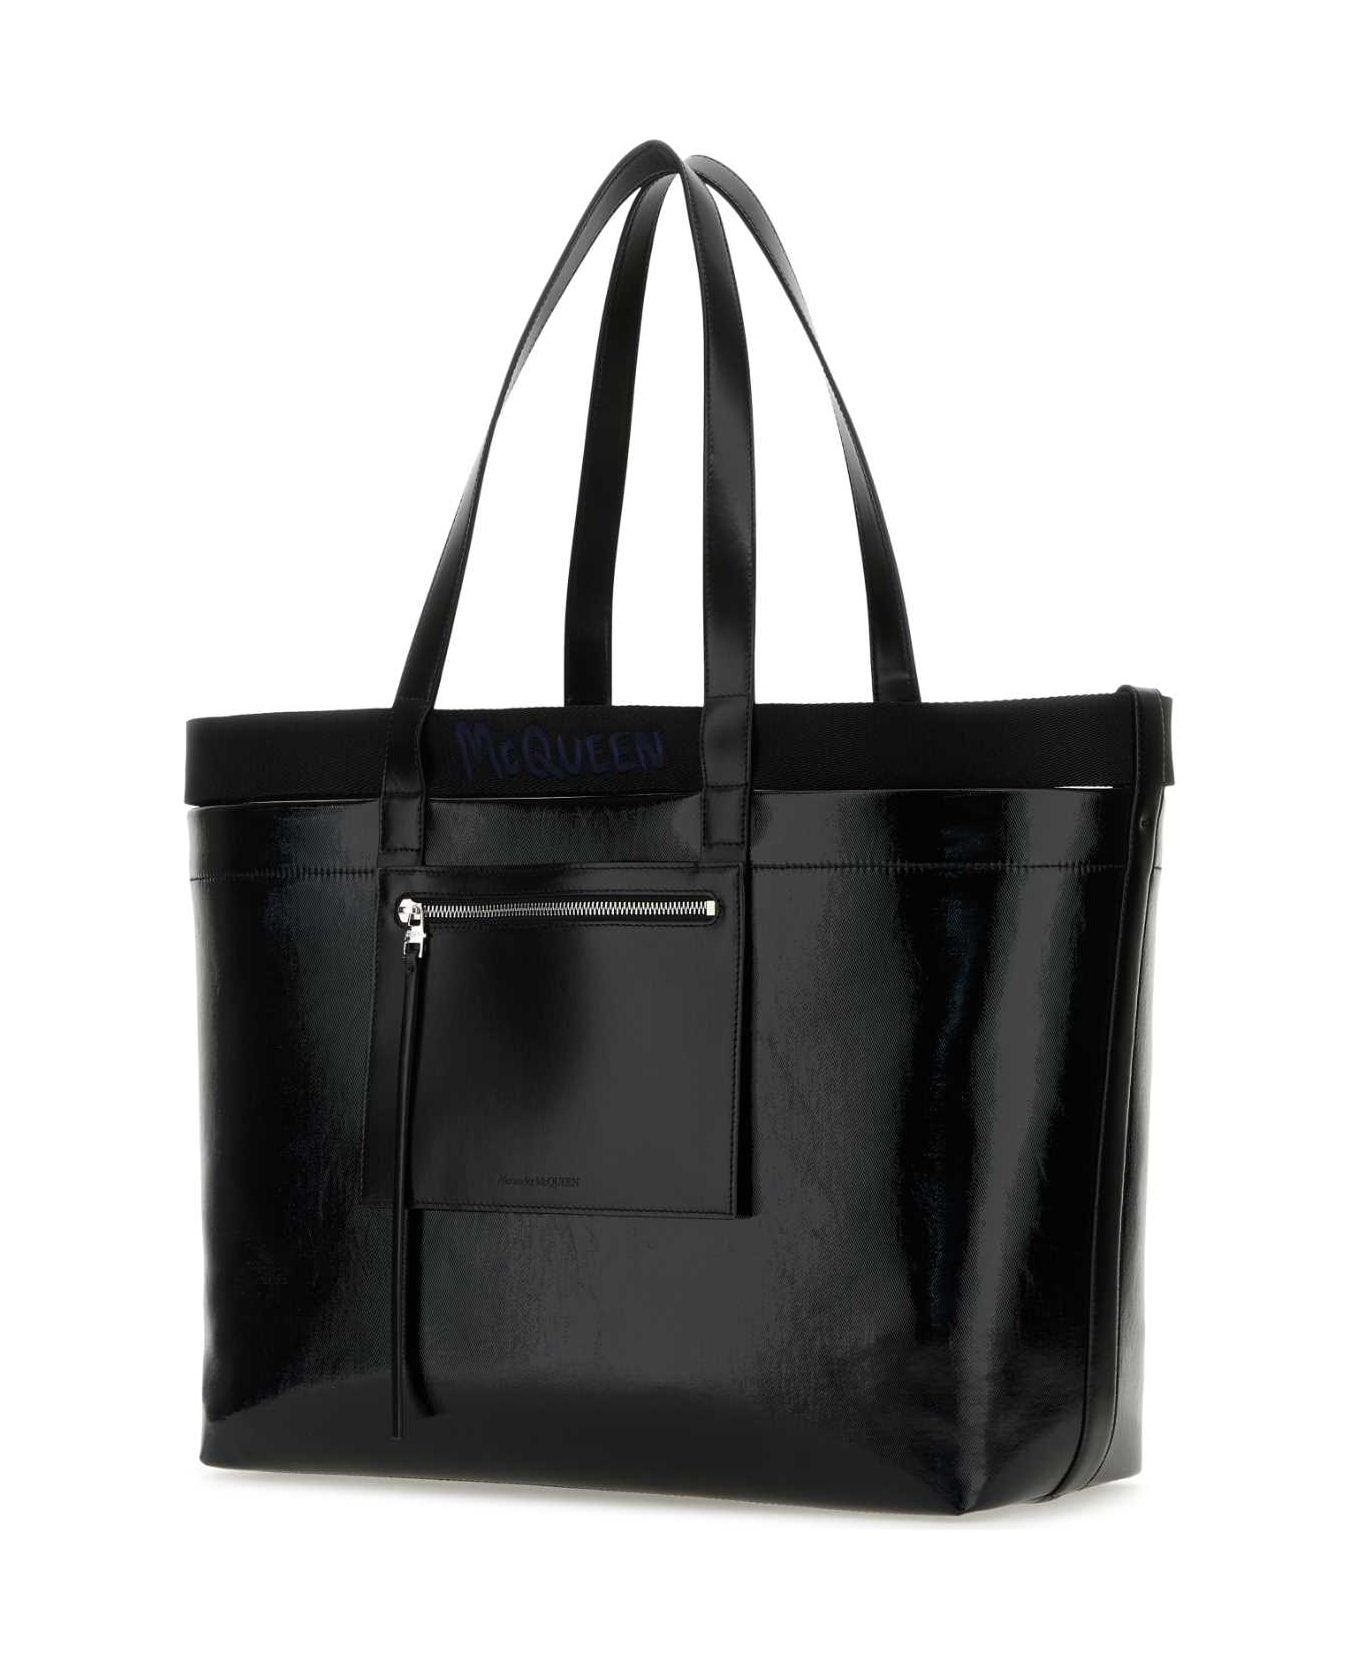 Alexander McQueen Black Canvas Shopping Bag - BLACKBLUE